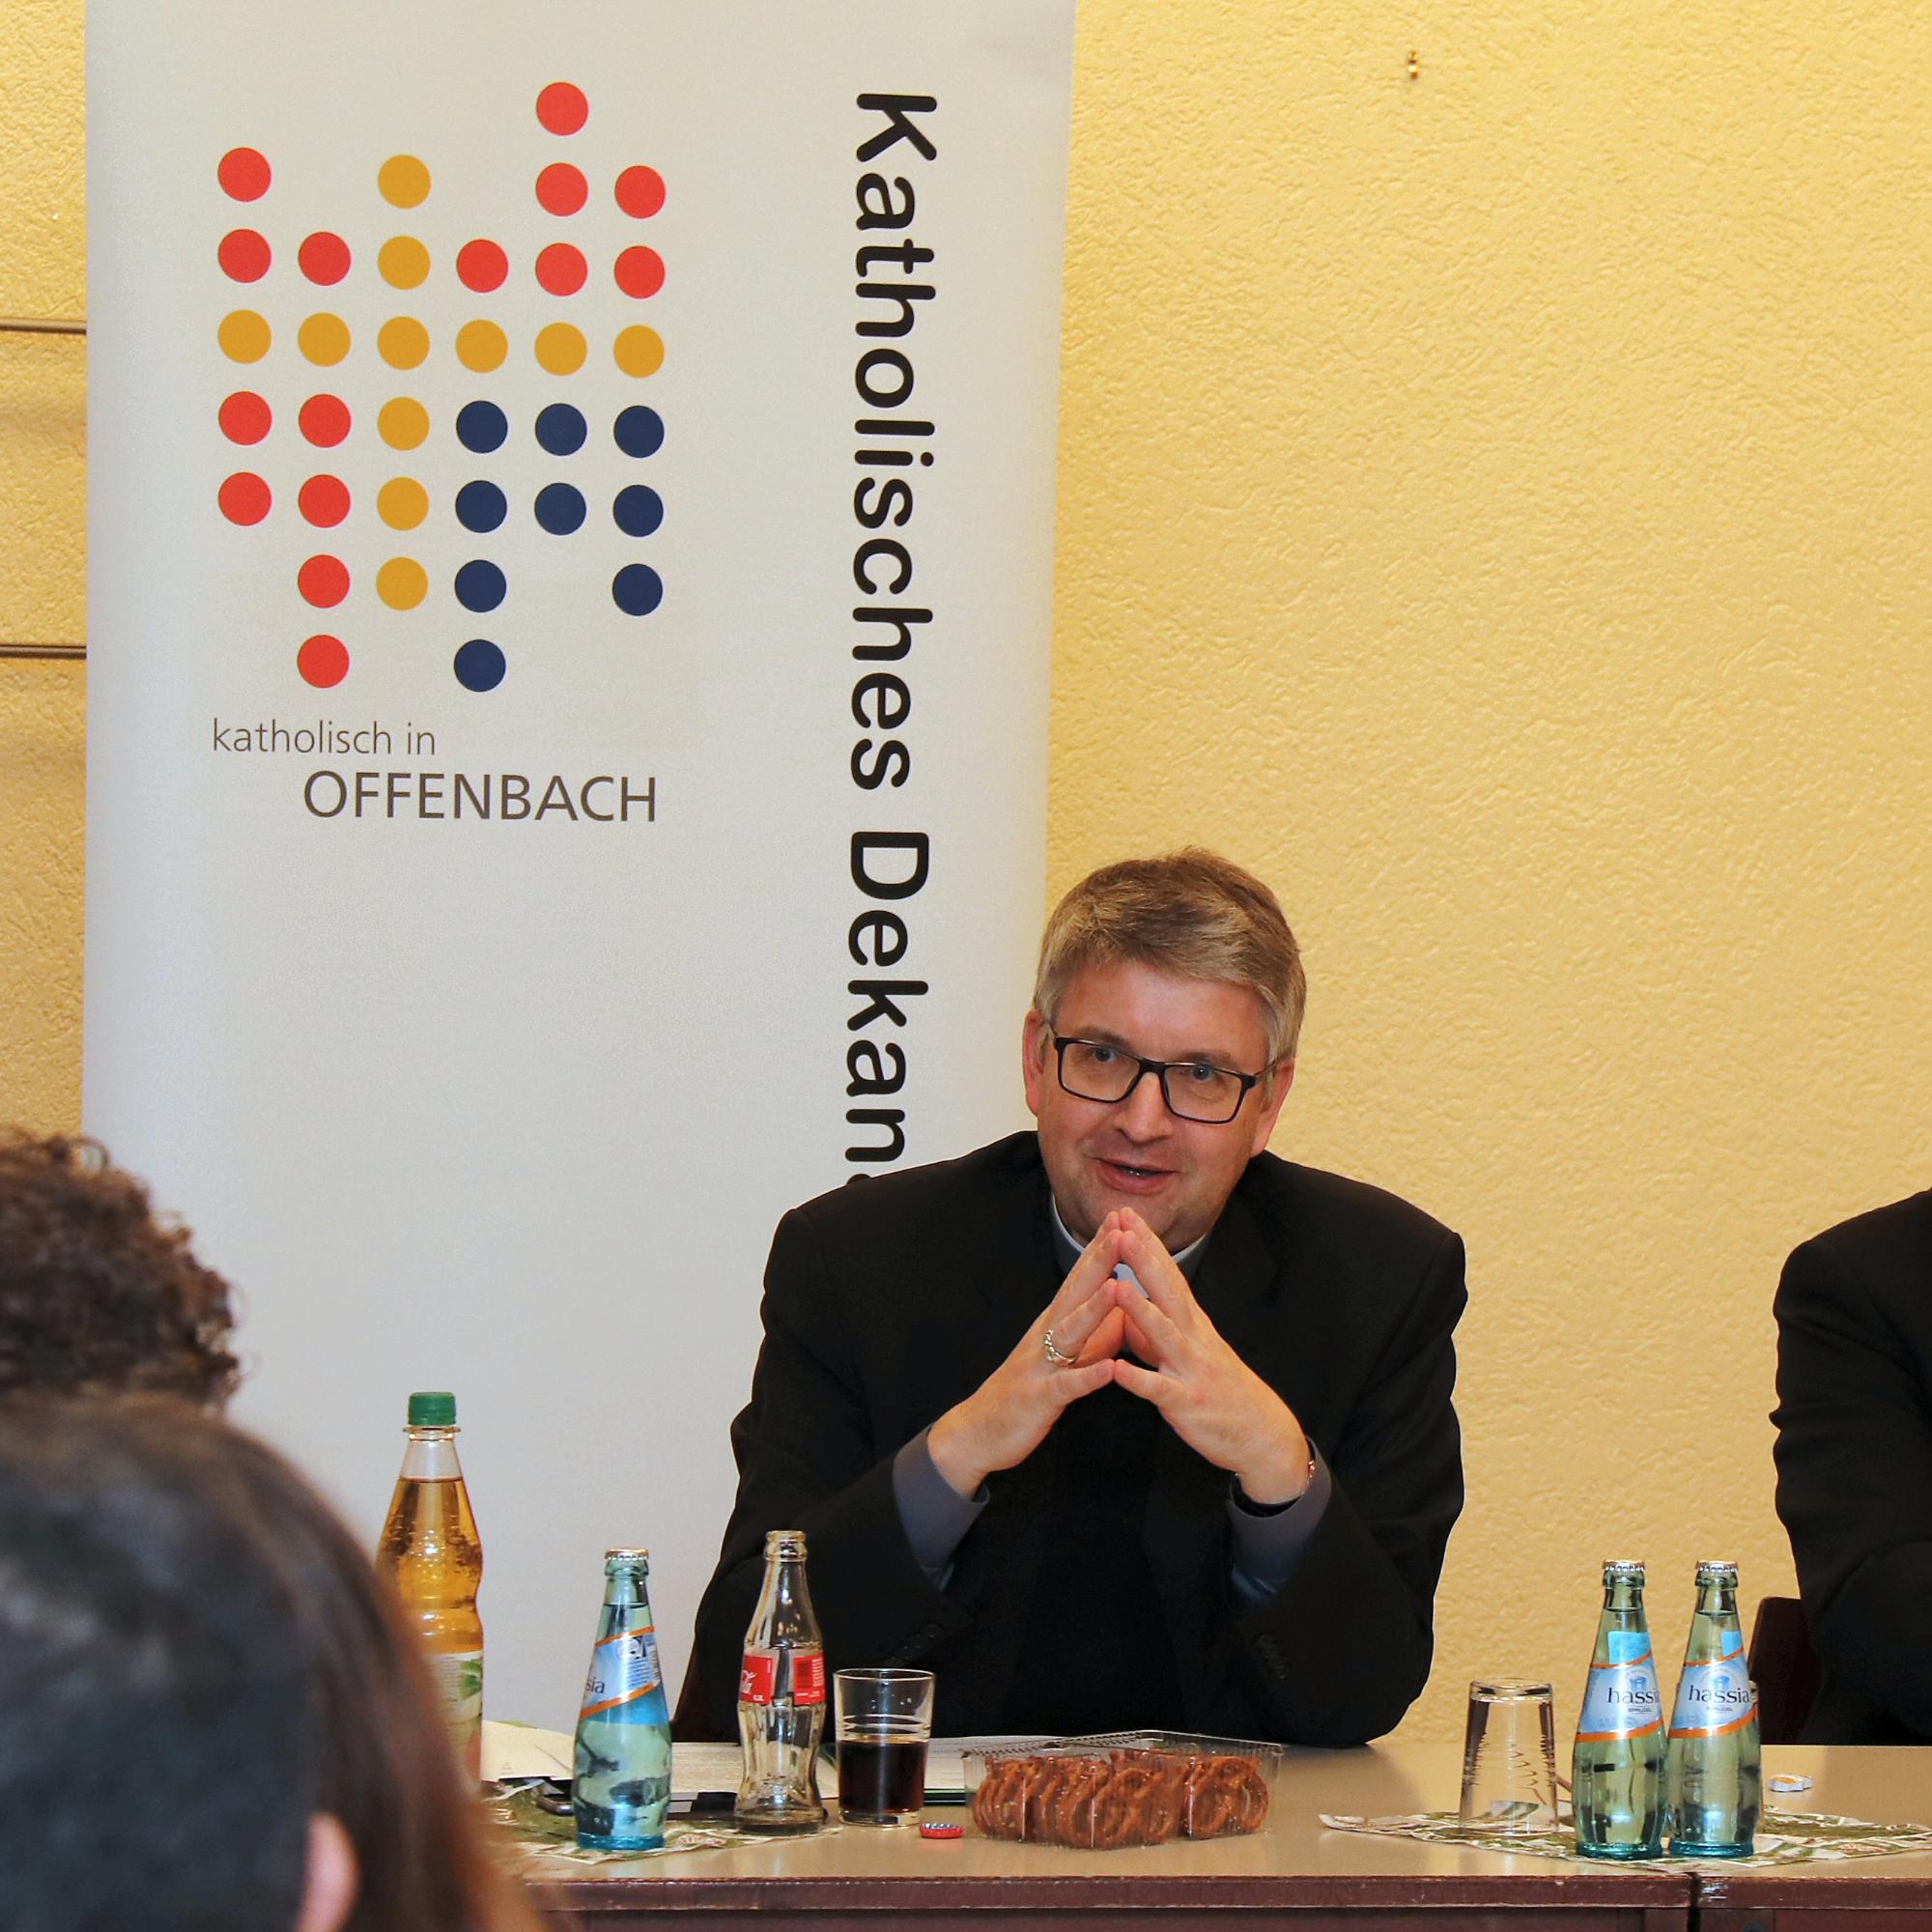 Offenbach, 7.12.2018: Bischof Peter Kohlgraf (l.) mit Dekan Andreas Puckel bei der Schlusskonferenz im Gemeindesaal von St. Konrad in Offenbach.